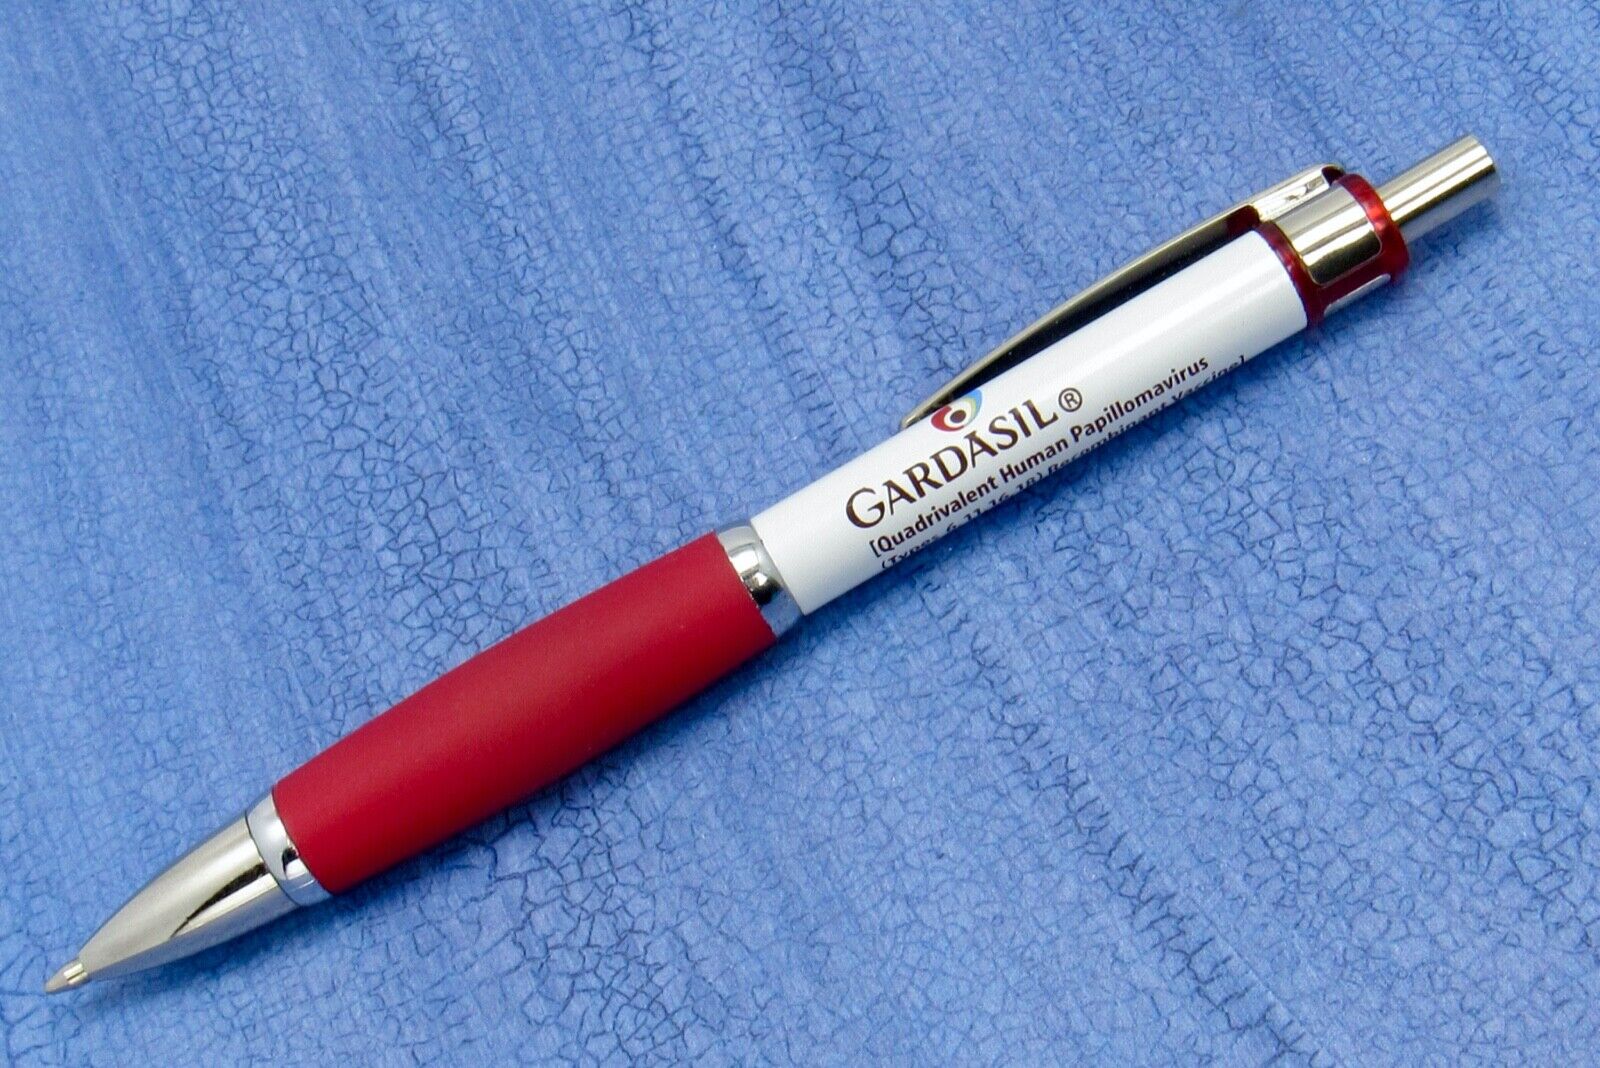 Metal Gardasil HPV Vaccine Drug Rep Pharmaceutical Promotional Advertising Pen